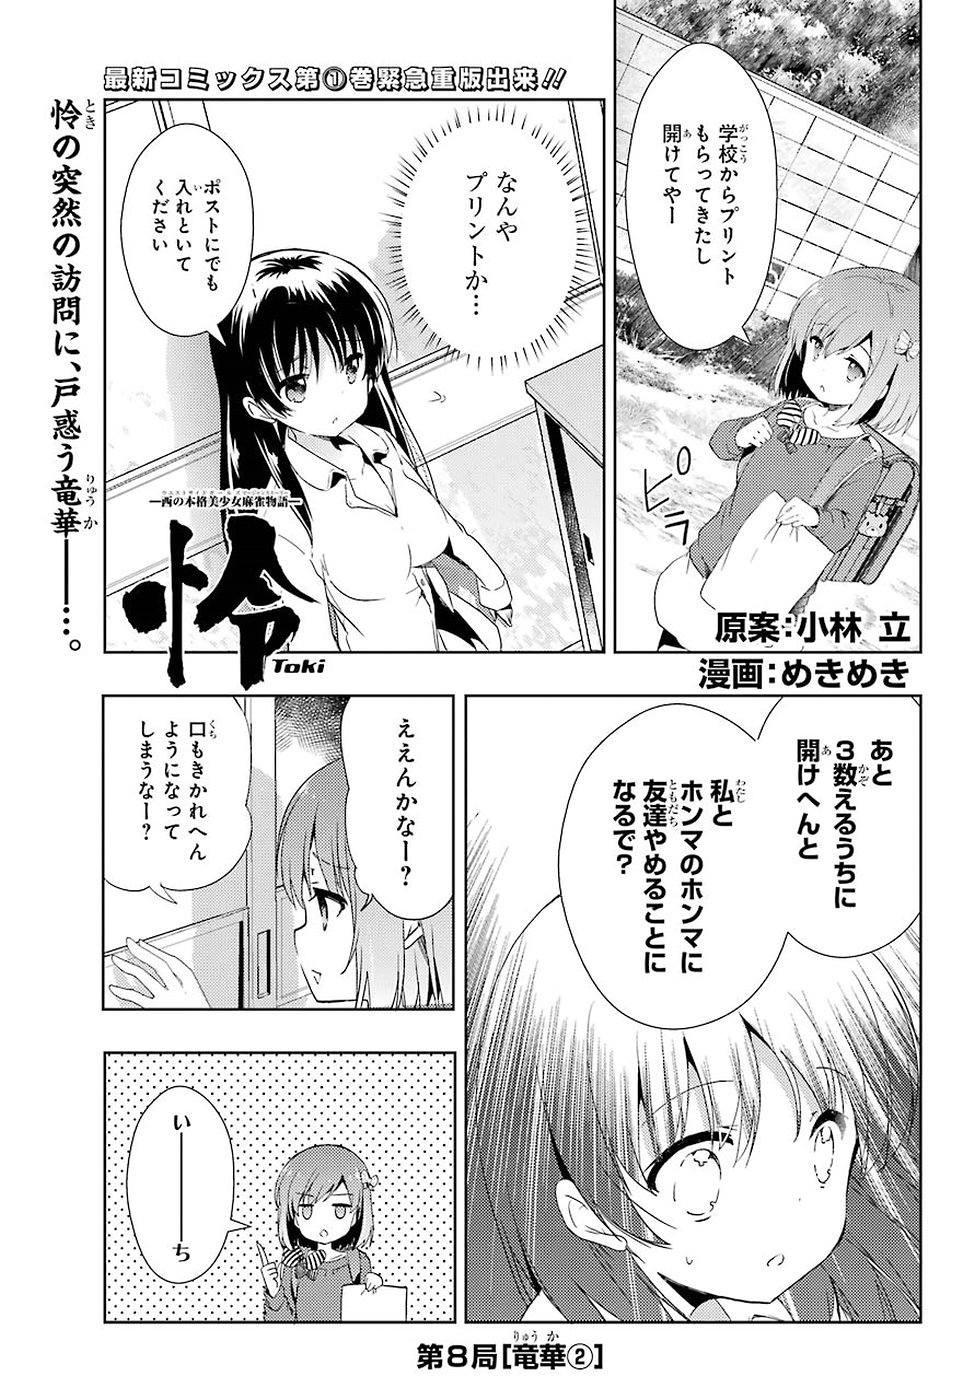 Toki (KOBAYASHI Ritz) - Chapter 008 - Page 1